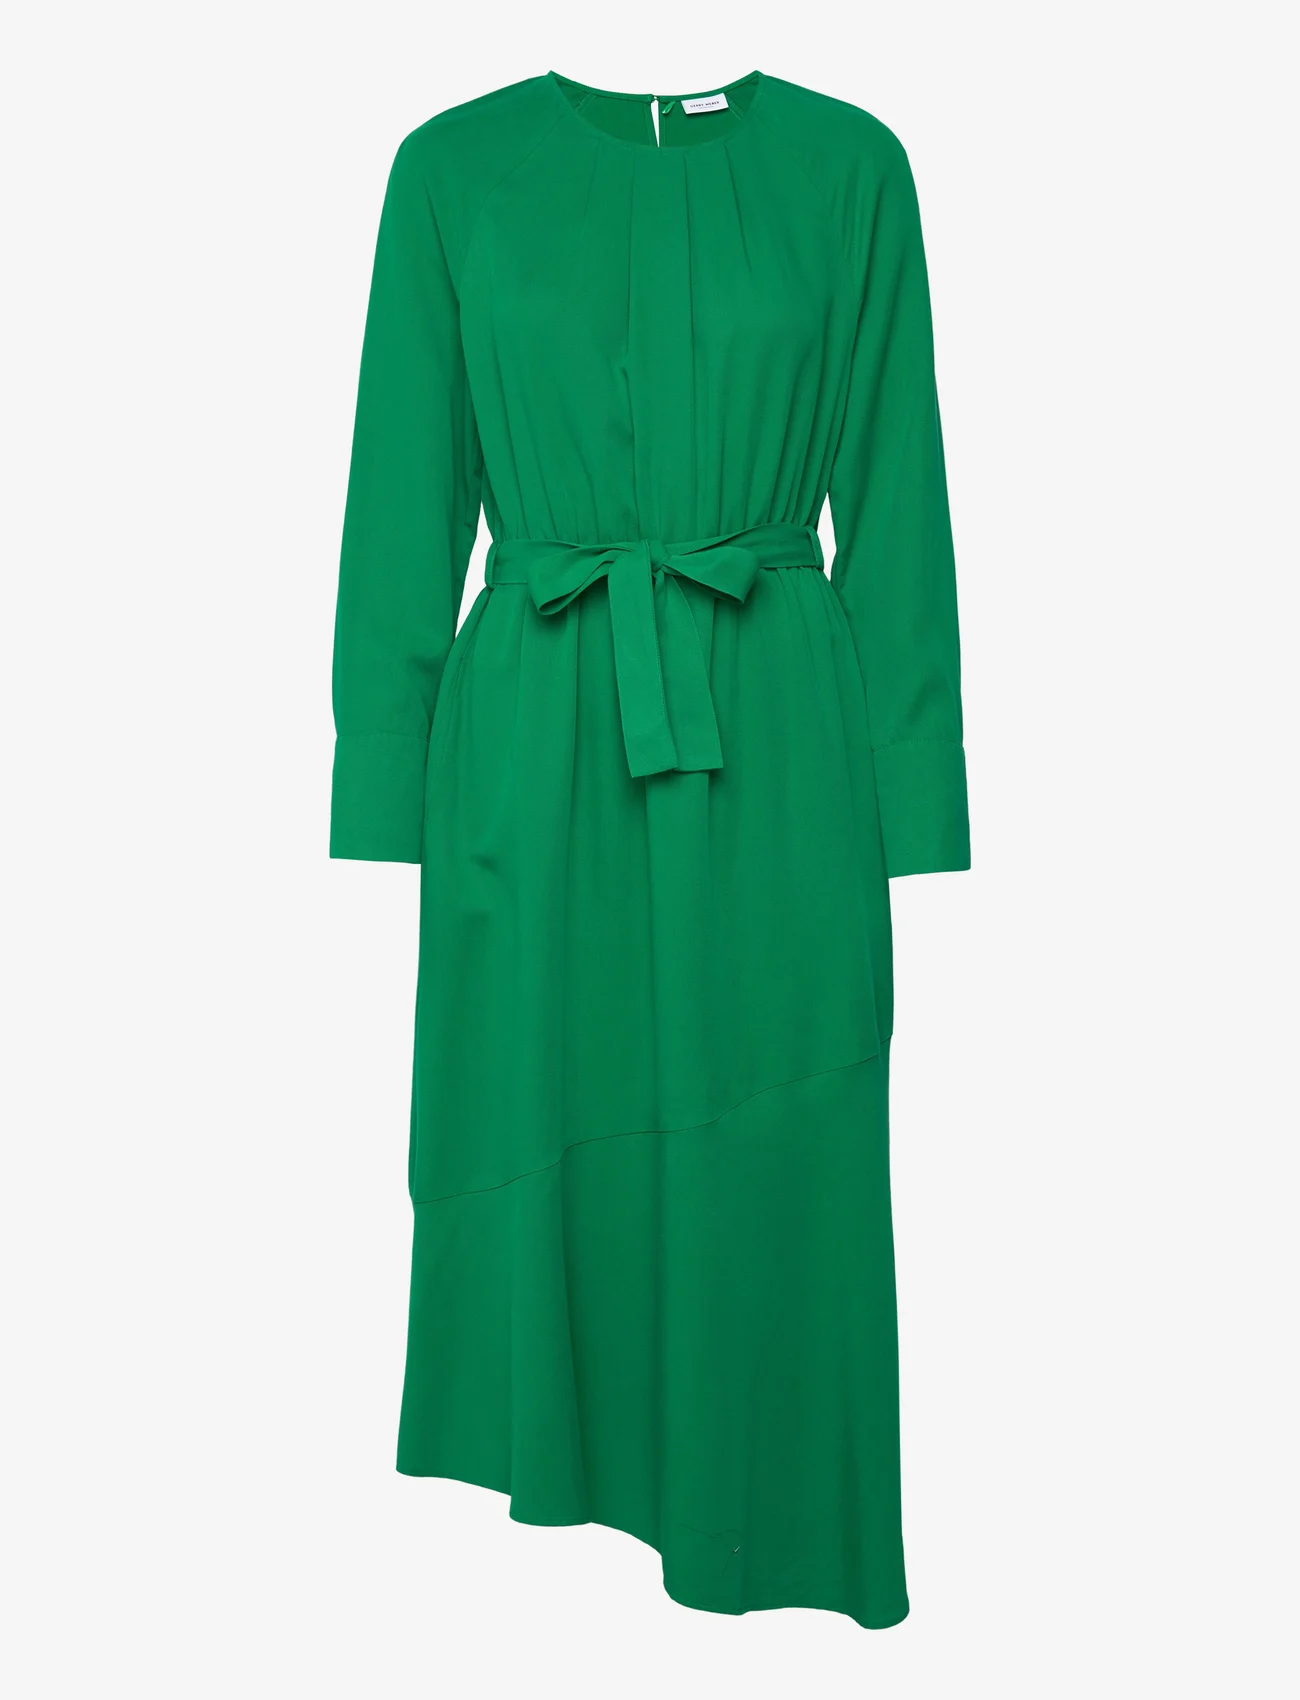 Gerry Weber - DRESS WOVEN - midi jurken - vibrant green - 0